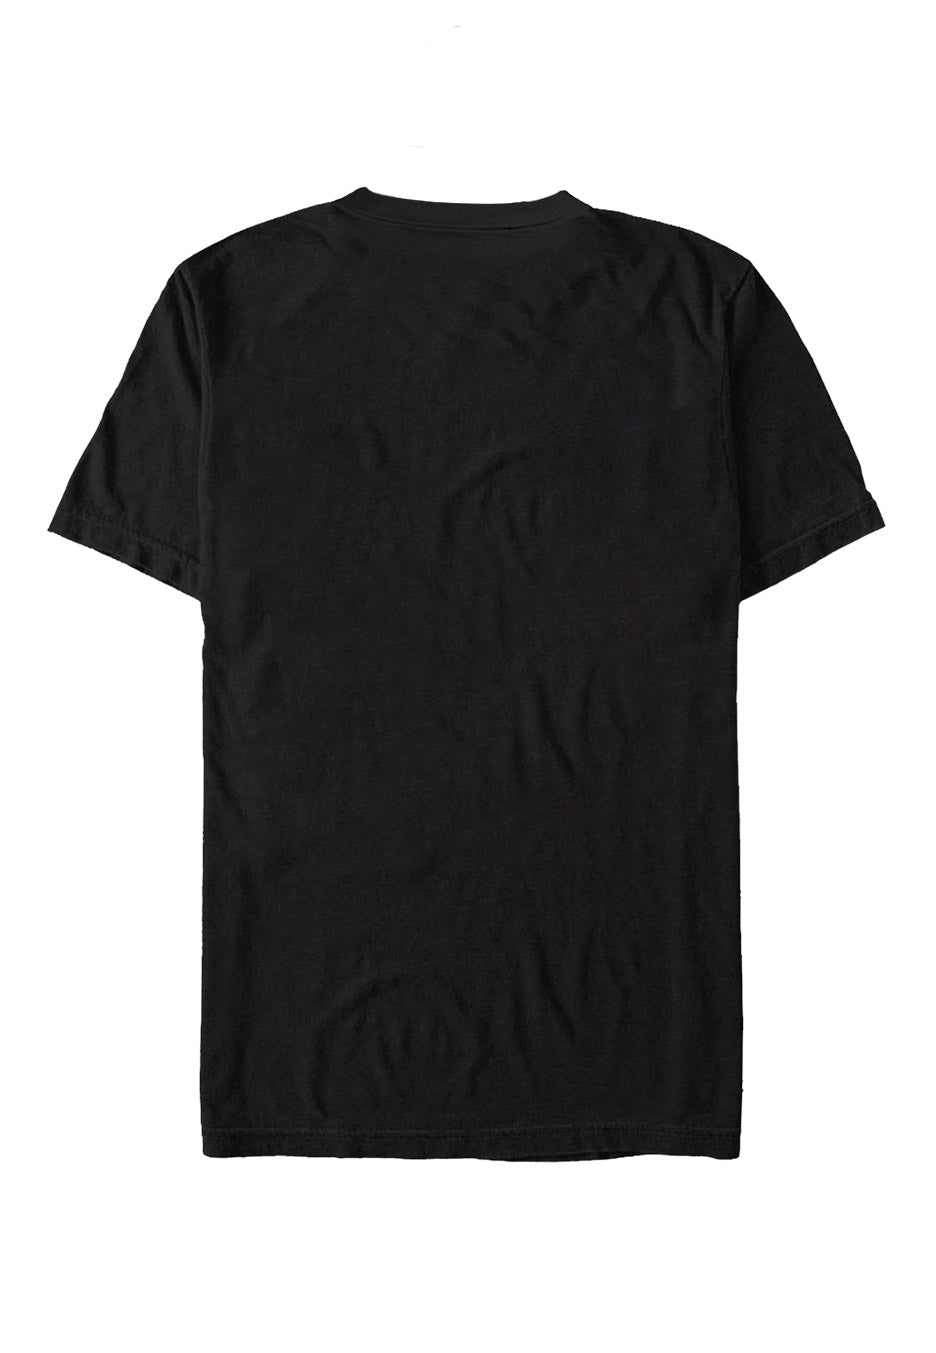 Trivium - Skelly Flower - T-Shirt | Neutral-Image